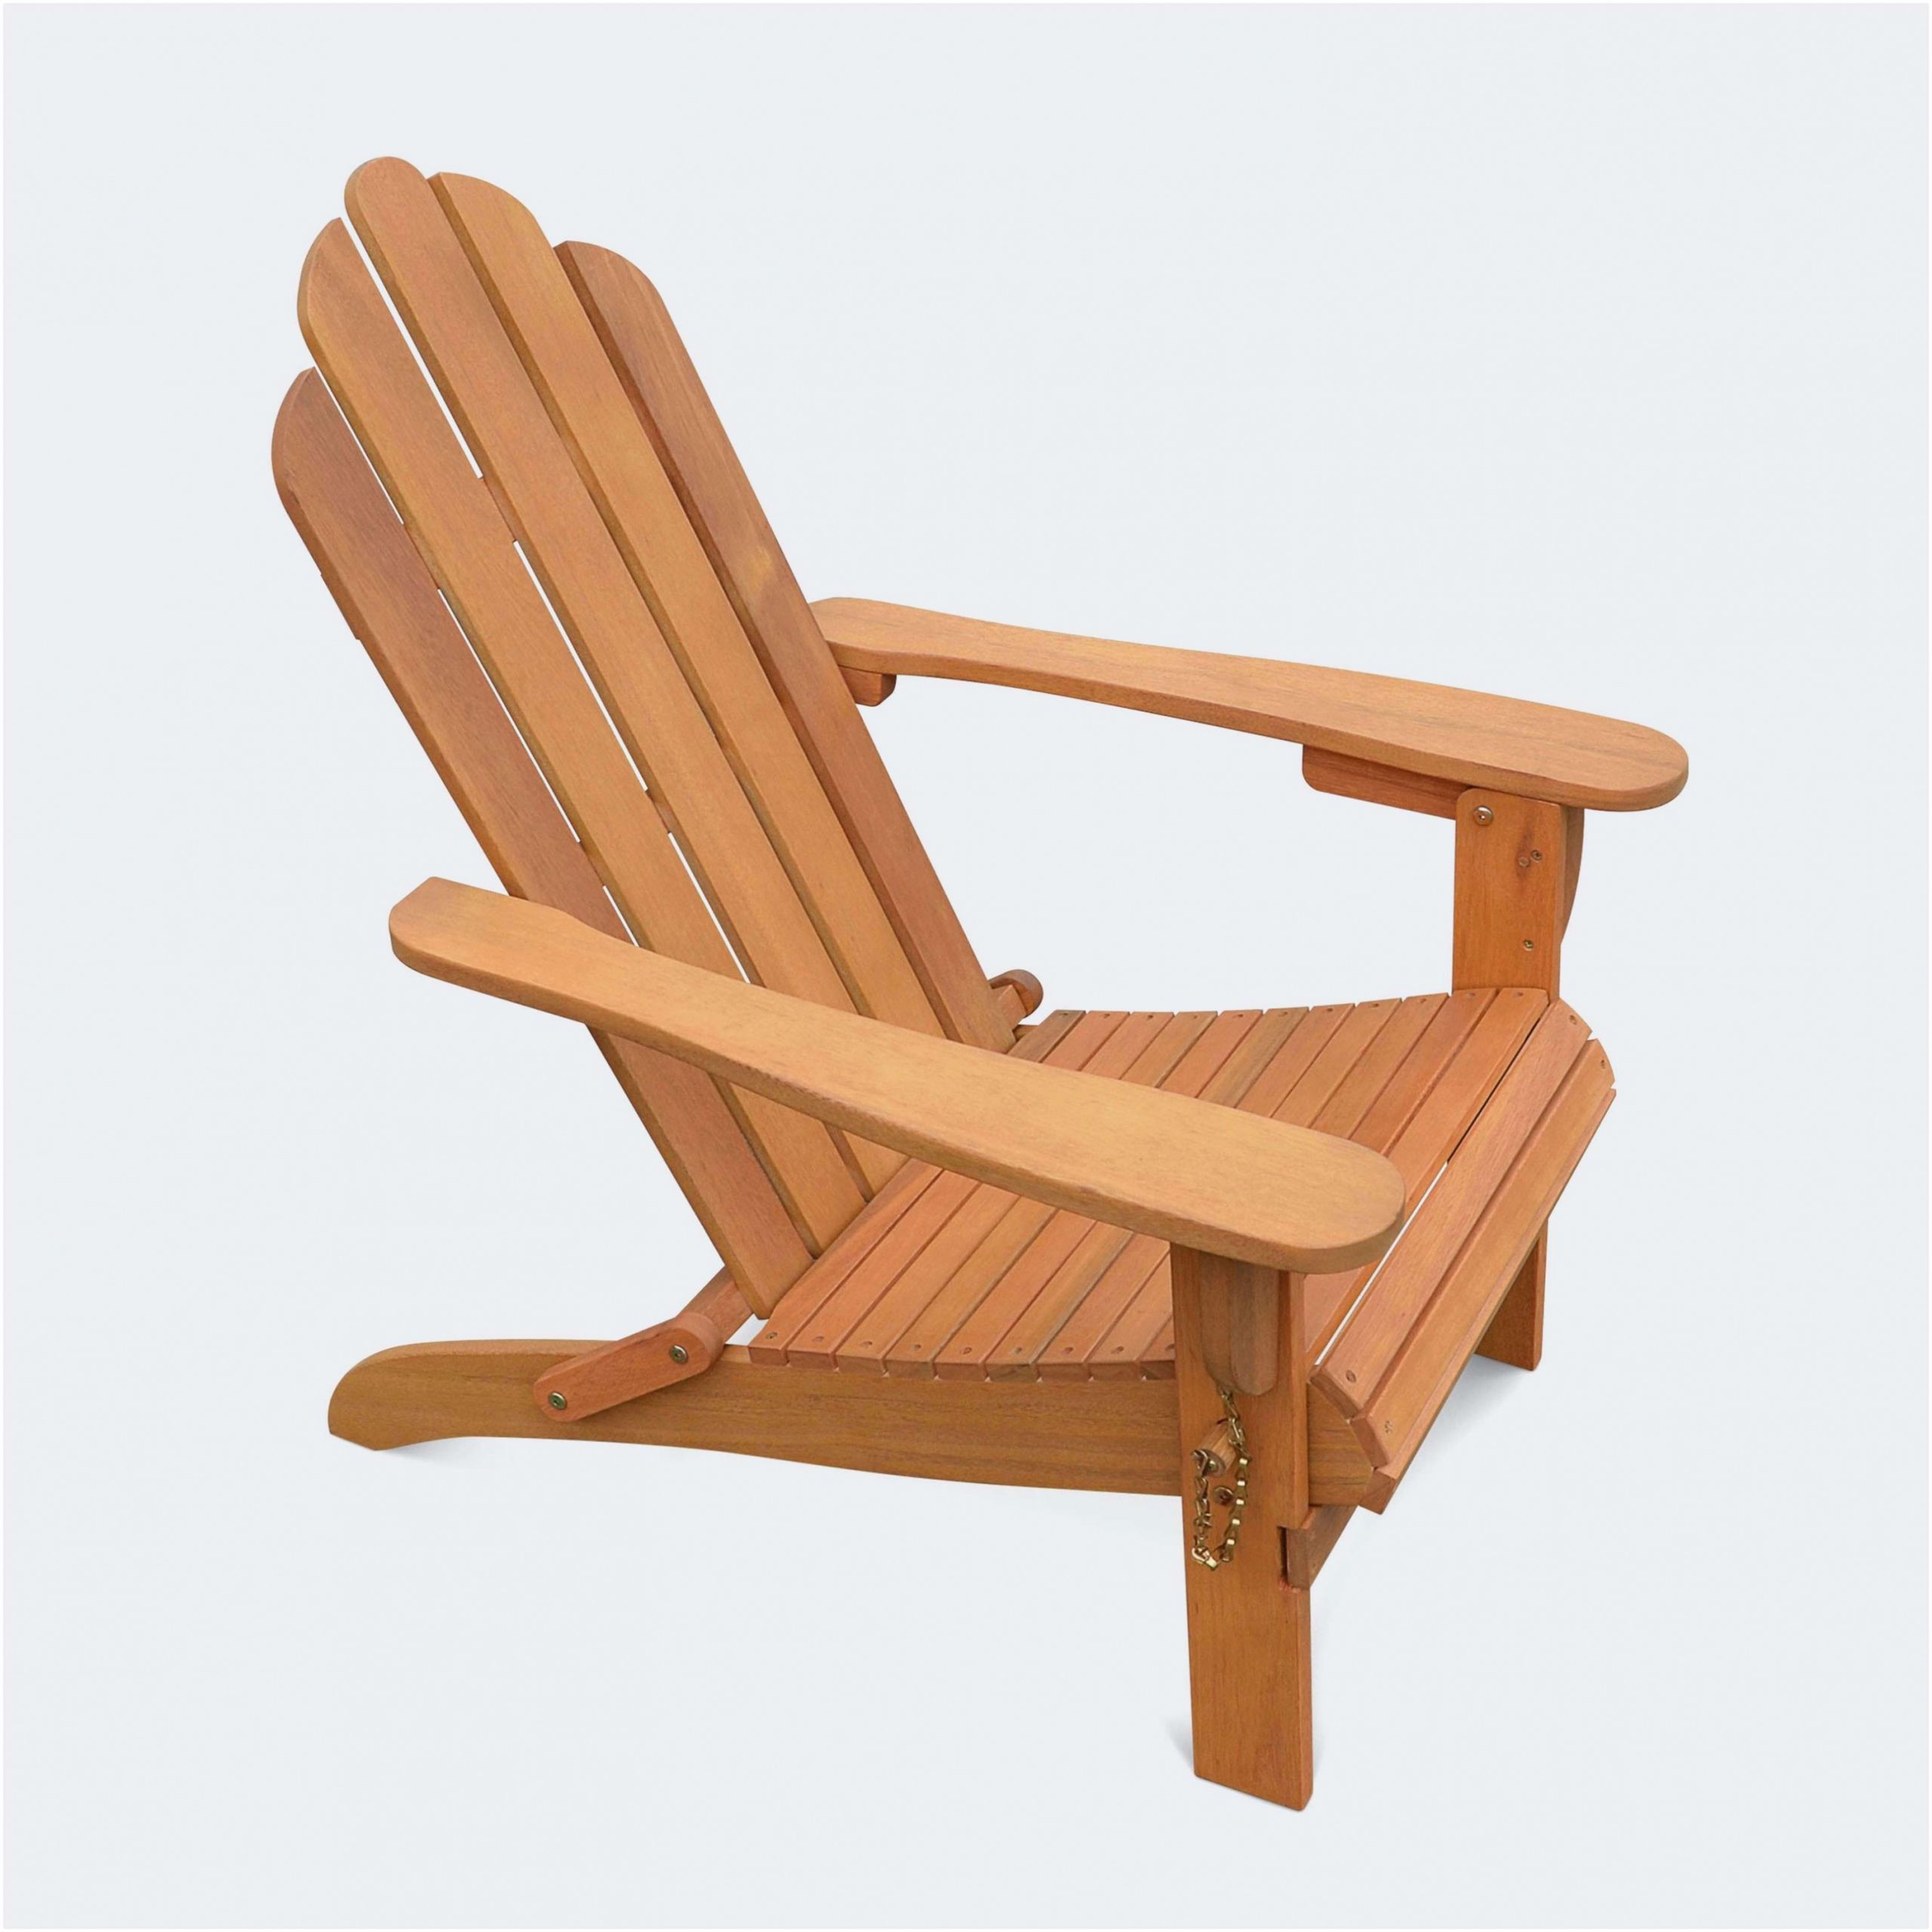 beau coussin fauteuil exterieur elegant coussin de chaise nouveau fauteuil rond exterieur of fauteuil rond exterieur